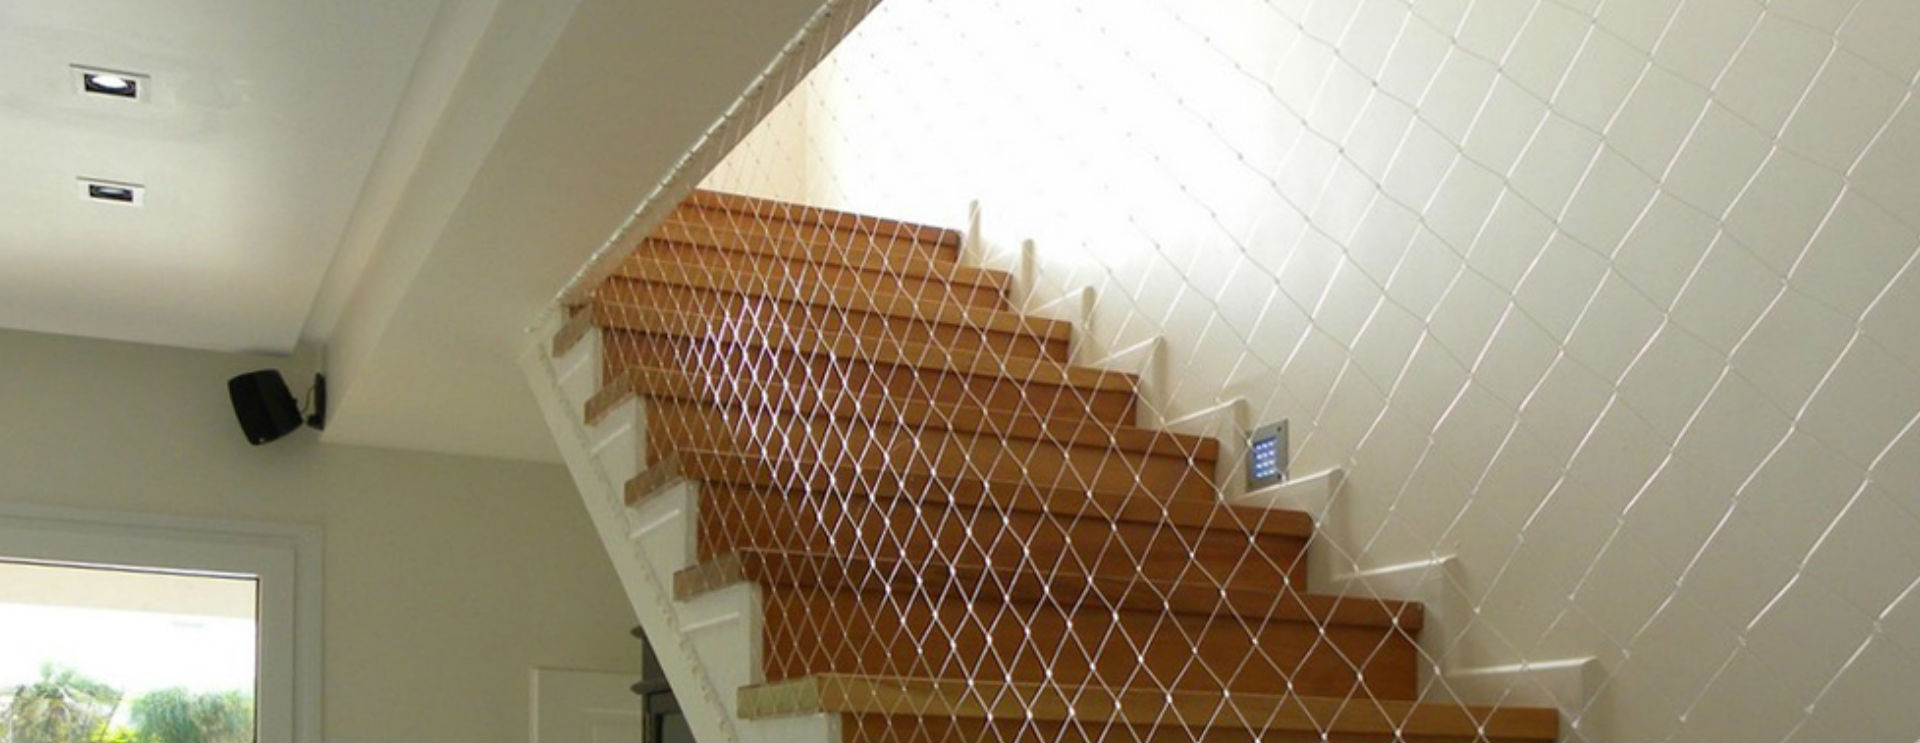 Redes de Proteção para Escadas - Titaniumredes.com.br